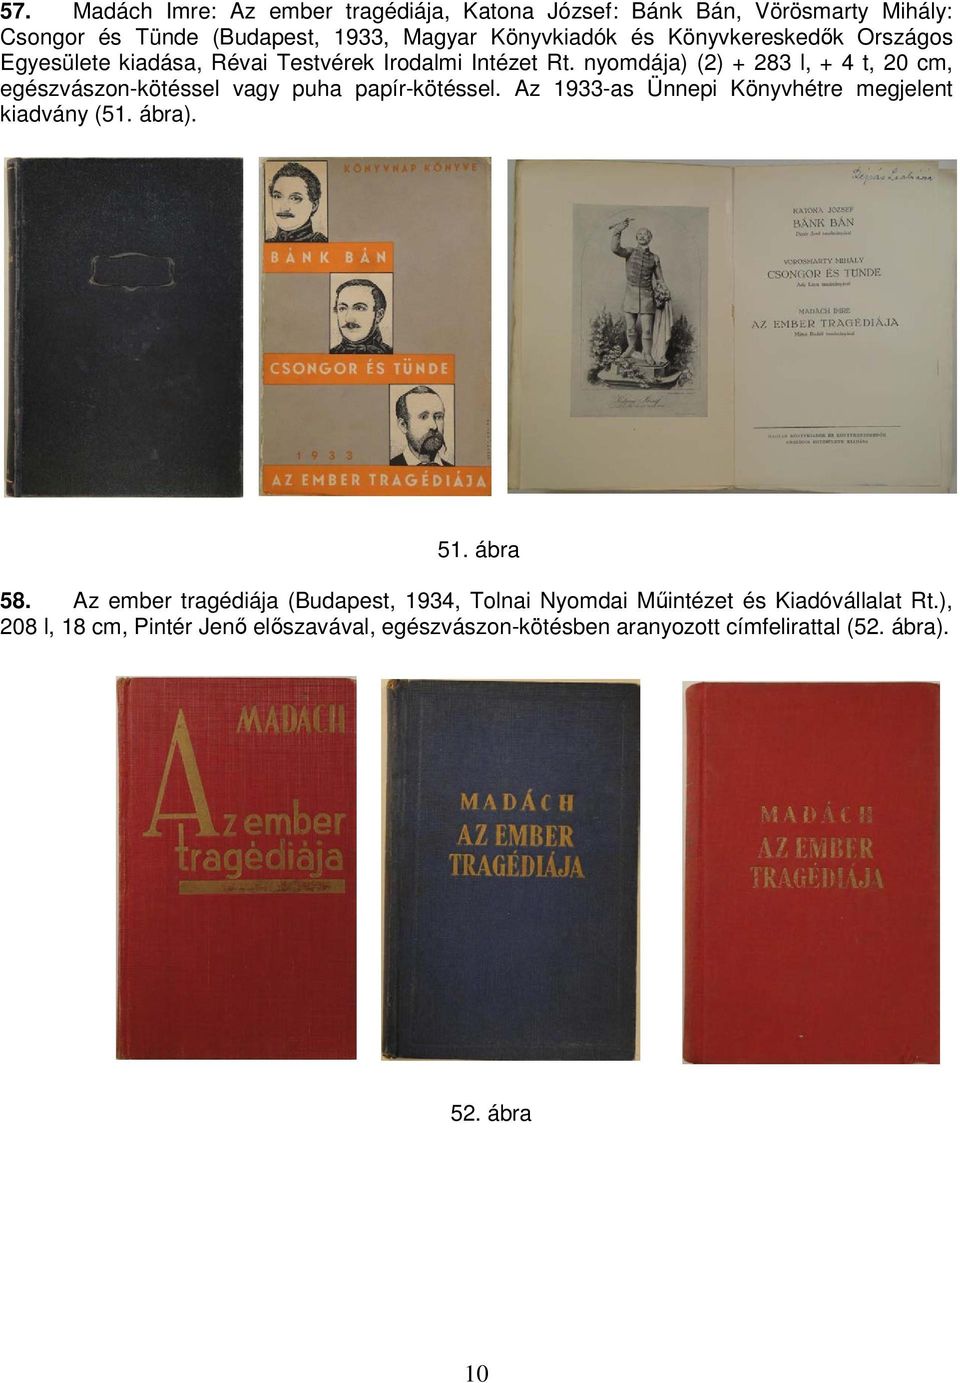 nyomdája) (2) + 283 l, + 4 t, 20 cm, egészvászon-kötéssel vagy puha papír-kötéssel. Az 1933-as Ünnepi Könyvhétre megjelent kiadvány (51. ábra).